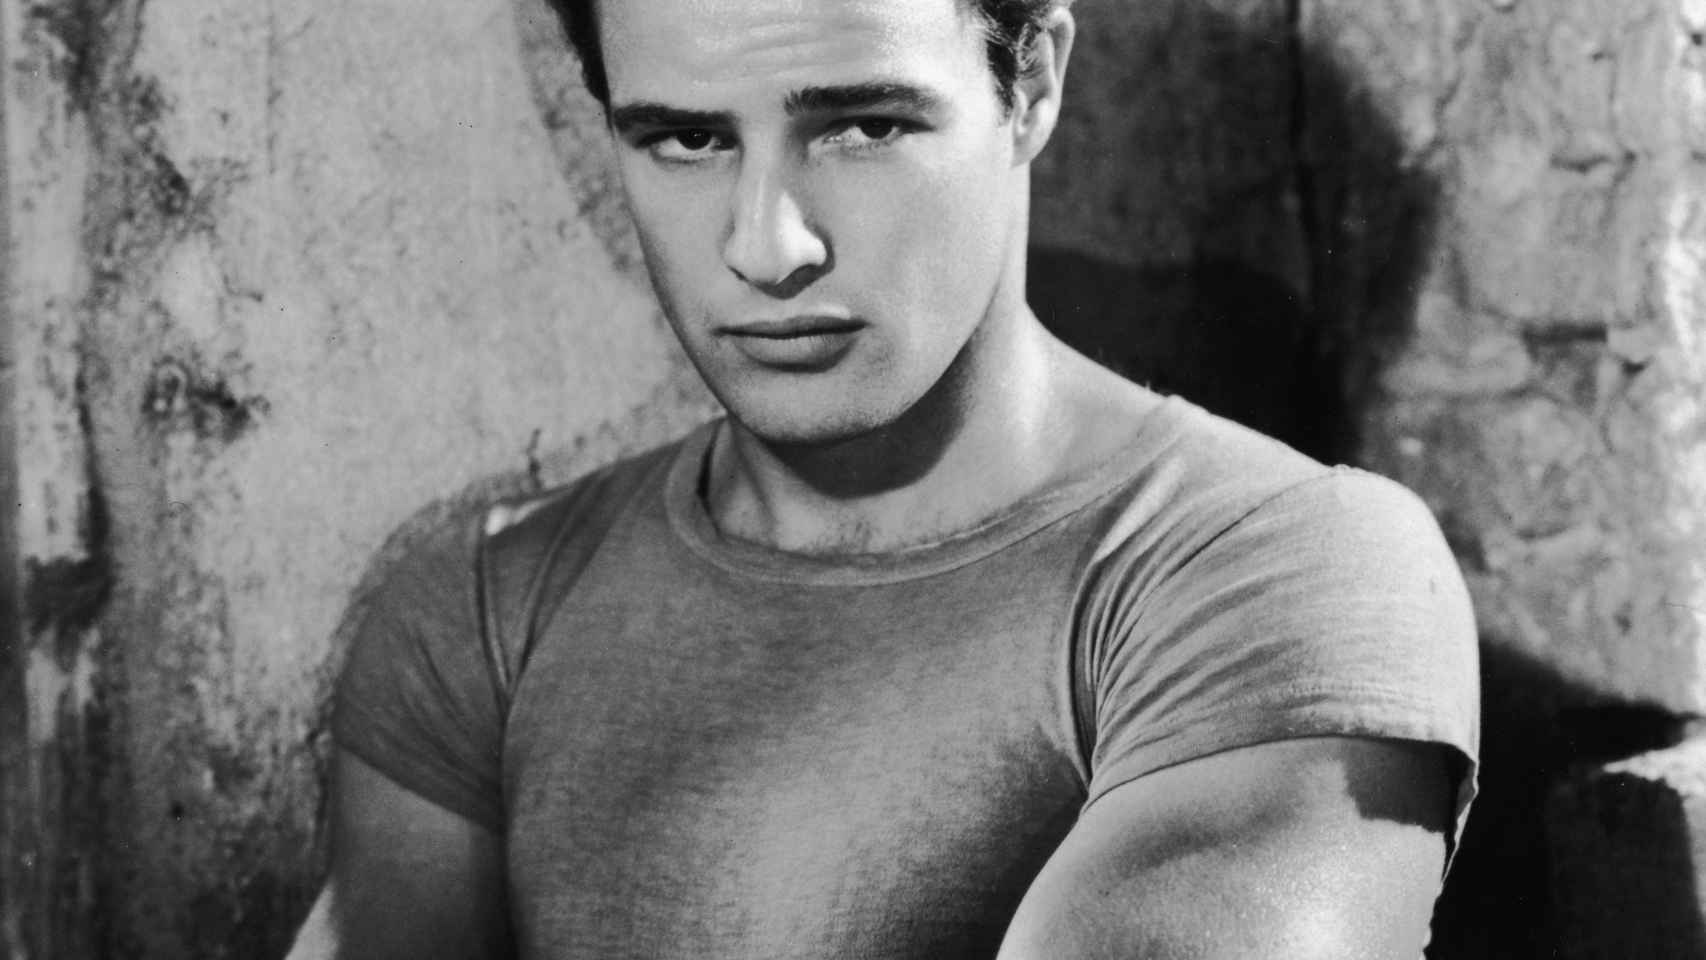 El actor popularizó la camiseta básica gracias a su papel en Un tranvía llamado deseo (1951). | Foto: Getty Images.